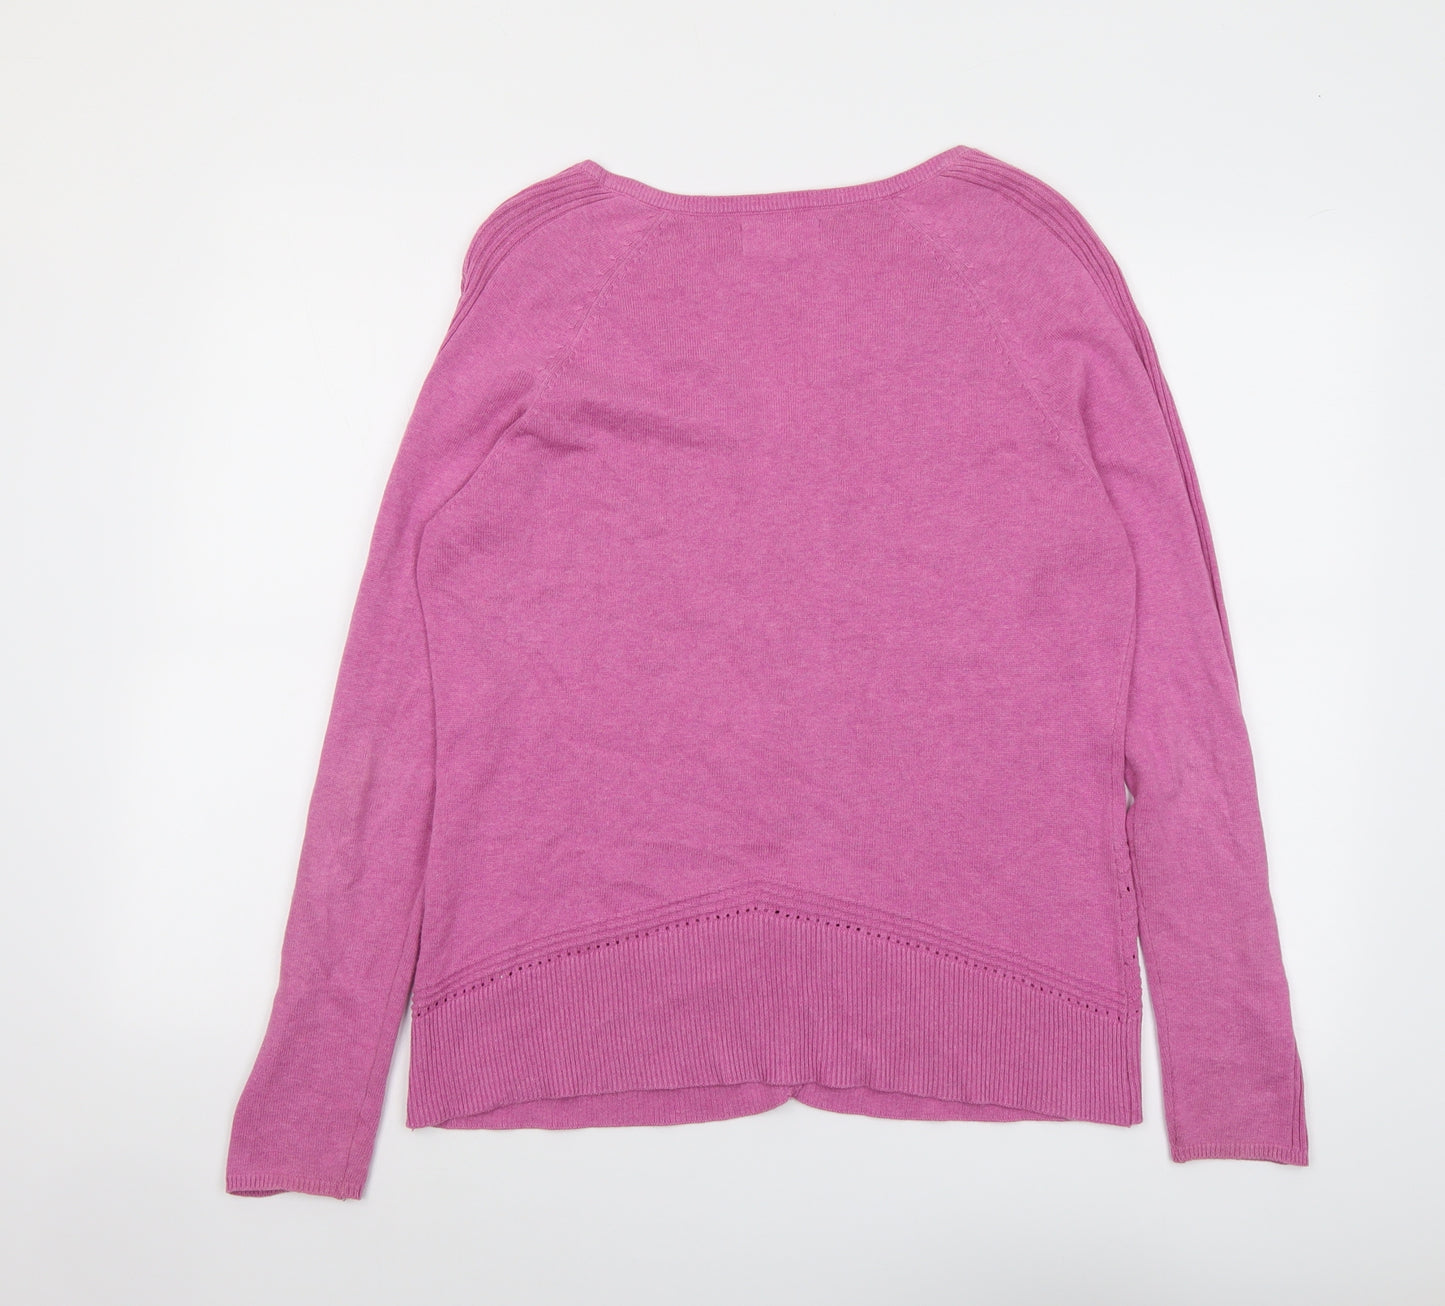 Mistral Womens Pink V-Neck Cotton Cardigan Jumper Size 14